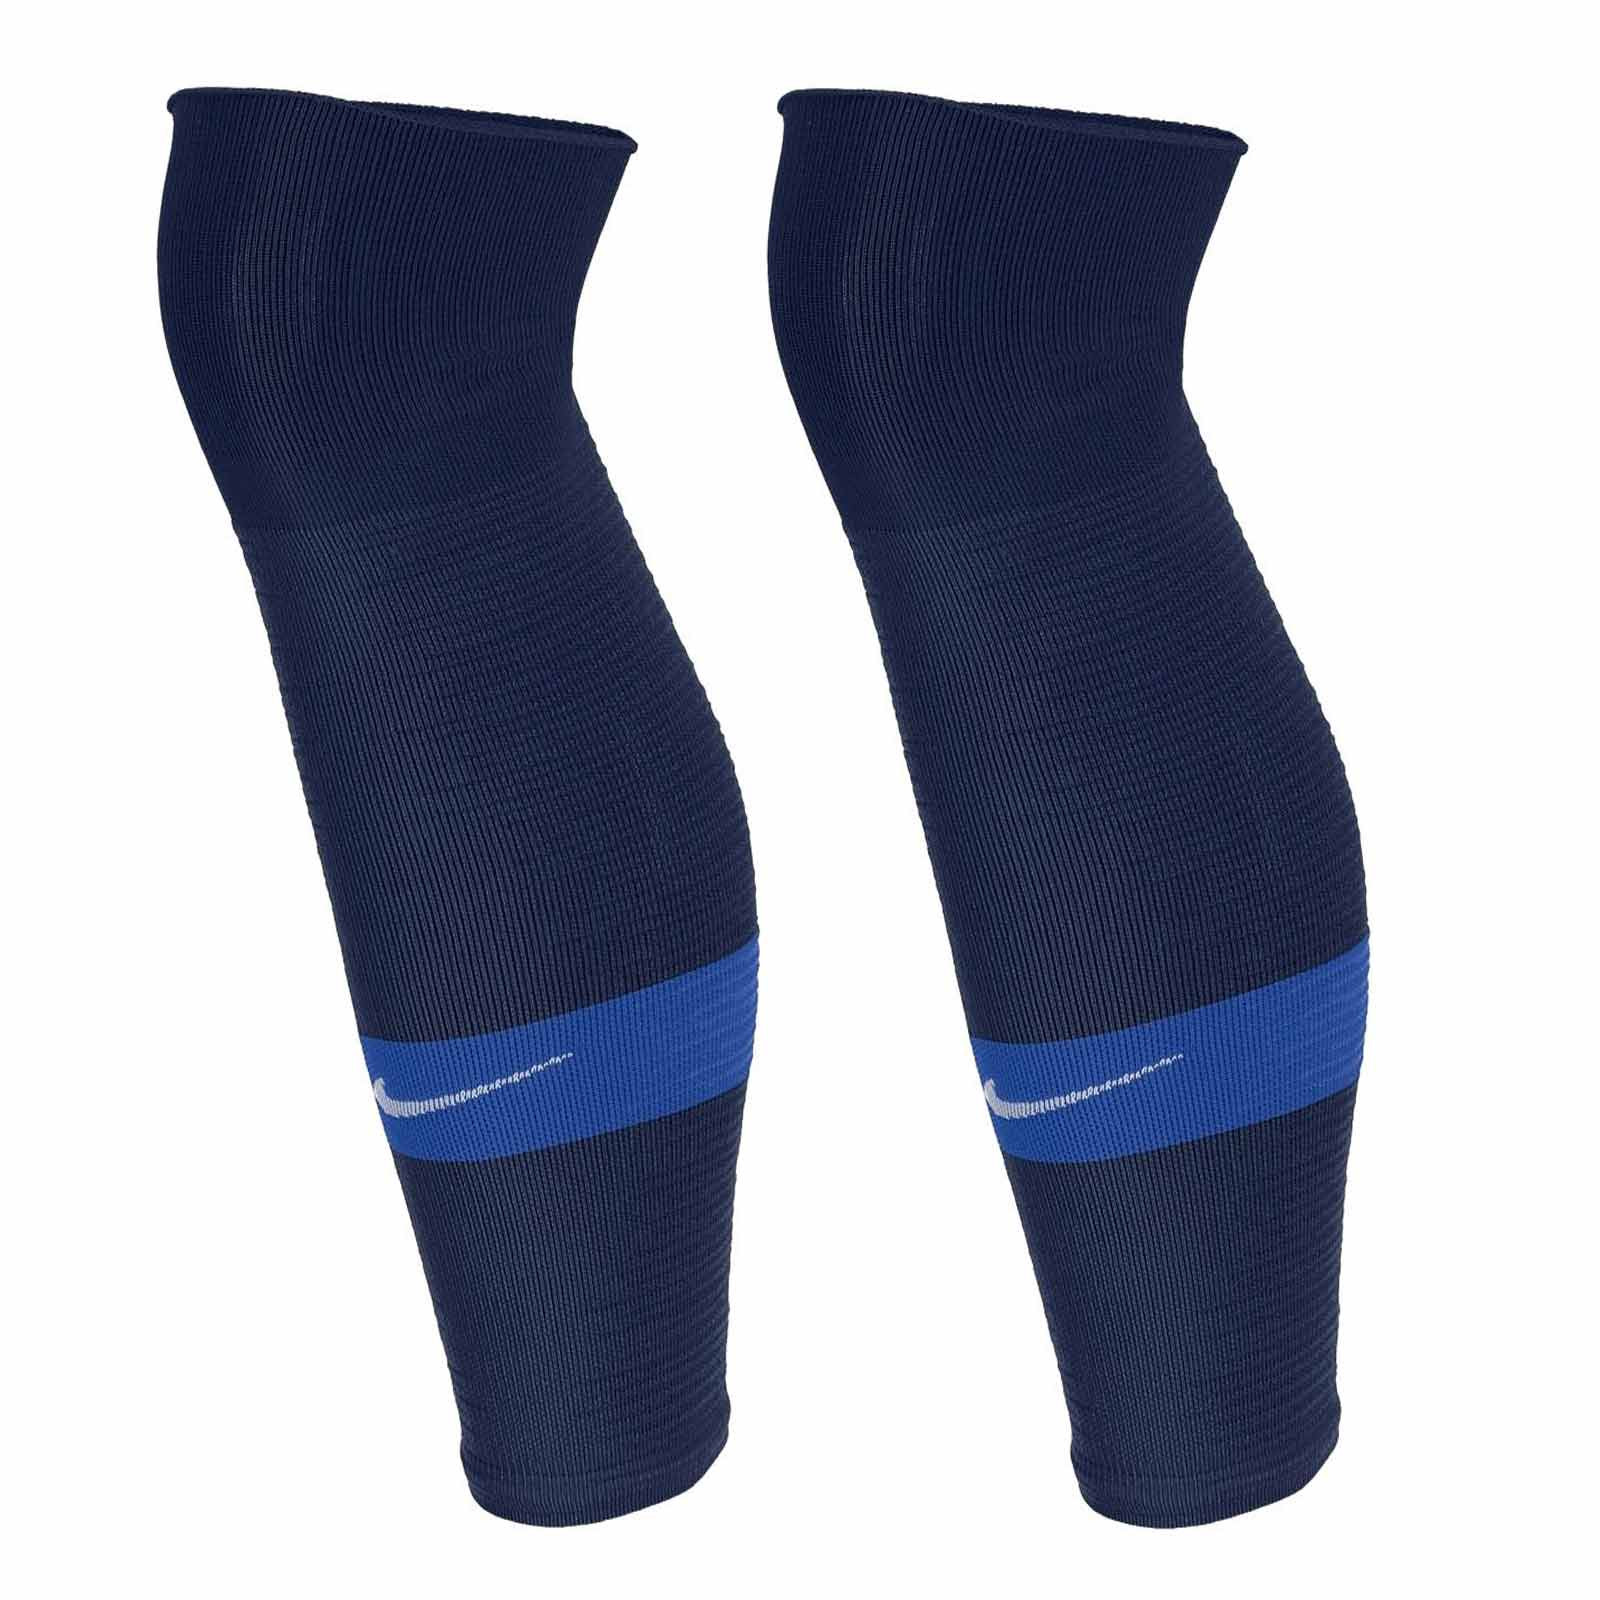 Calcetas de Futbol Nike Academy Azul Marino-Hombre SX4120-401